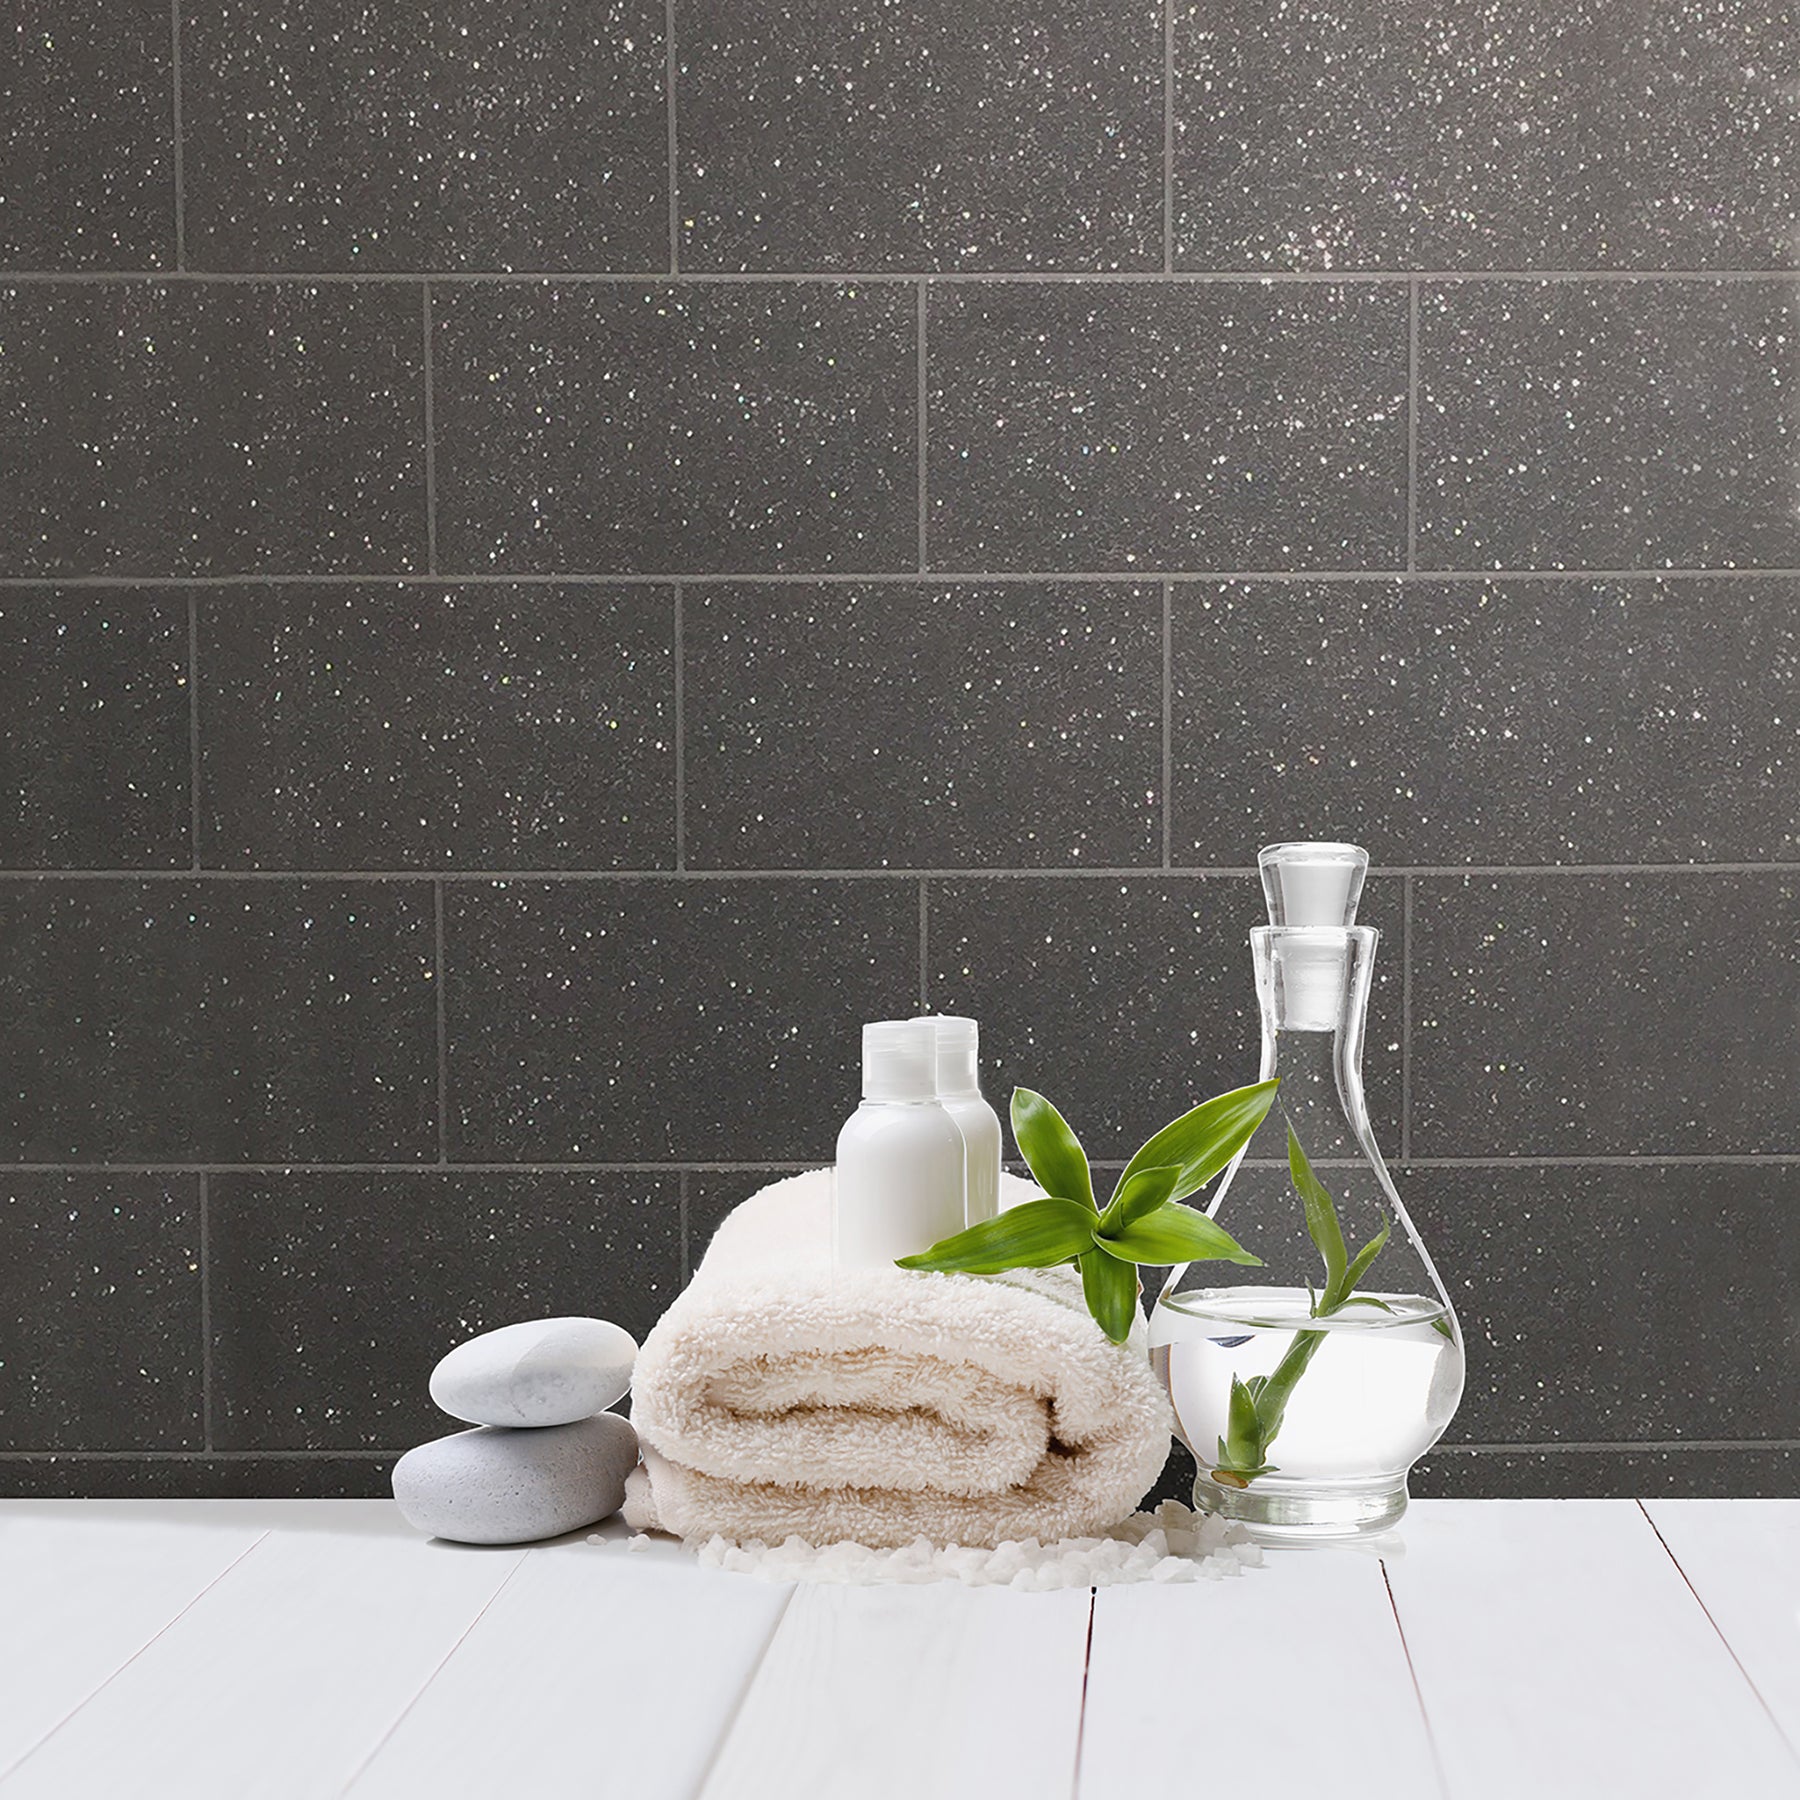 Buy 2814-m1055 bath blacks tiles wallpaper advantage Wallpaper